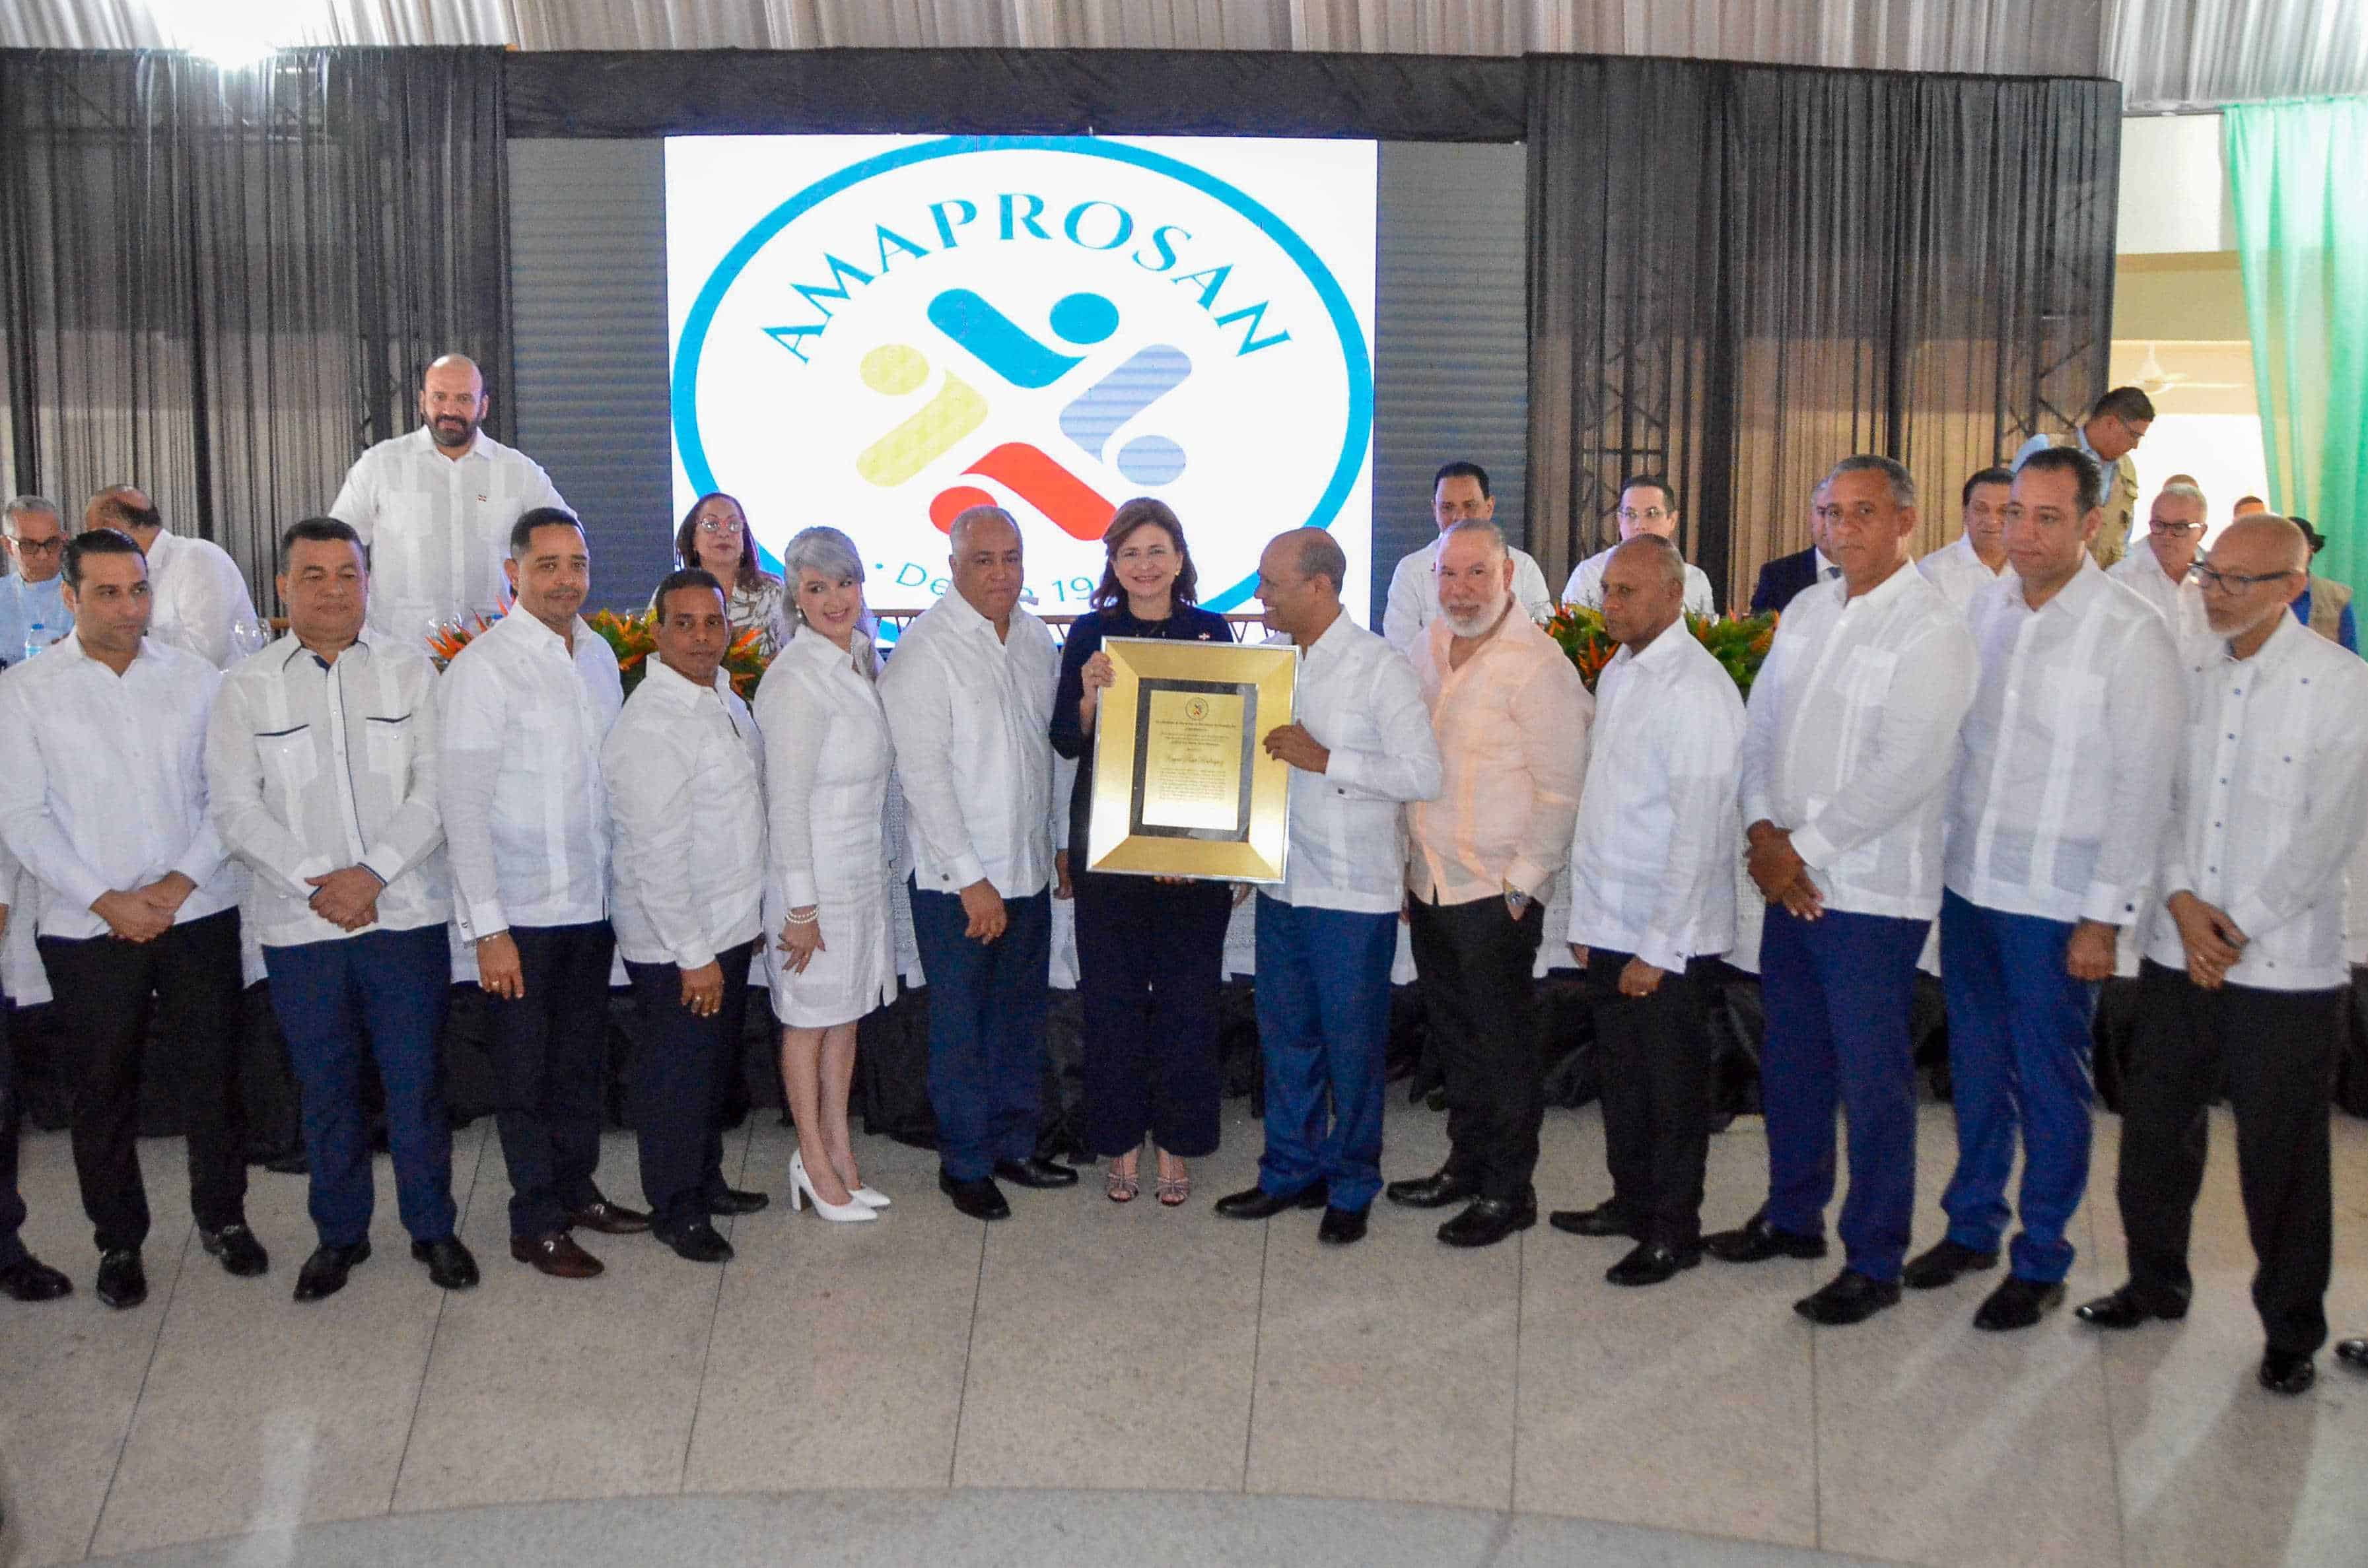 La junta directiva de Amaprosan entregan reconocimiento a la vicepresidenta Raquel Peña.